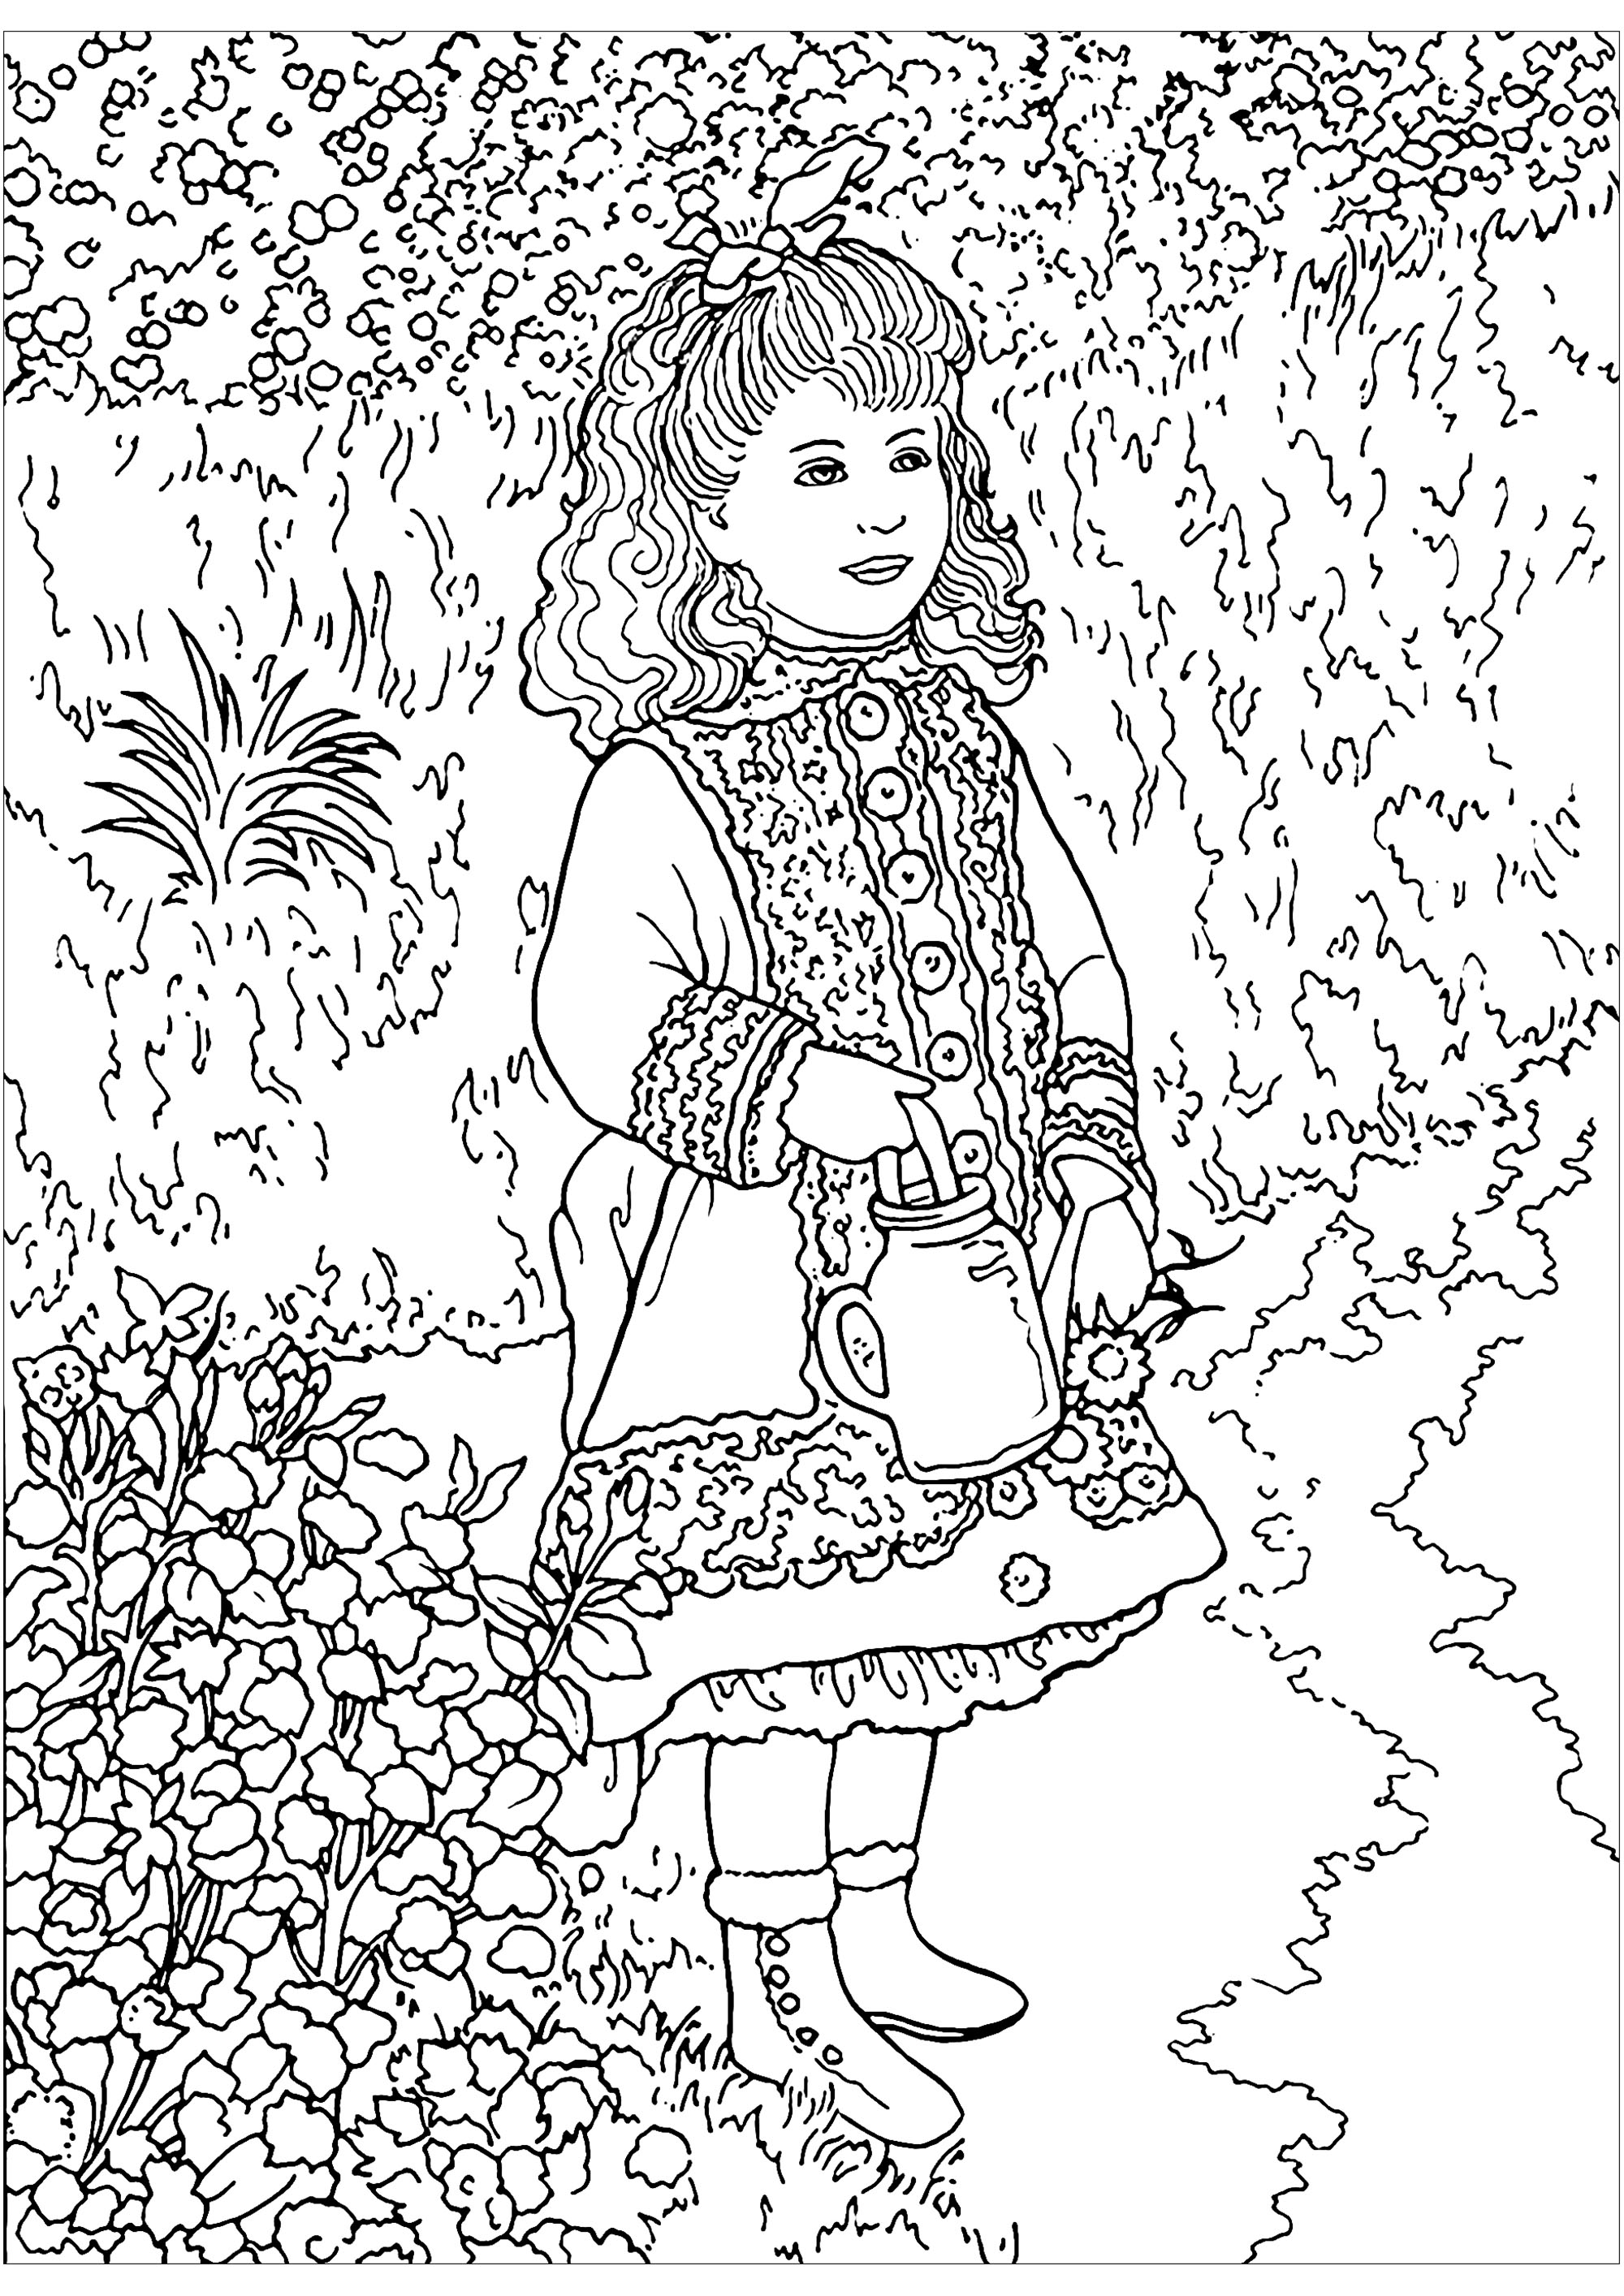 Image de Renoir à télécharger et imprimer pour enfants